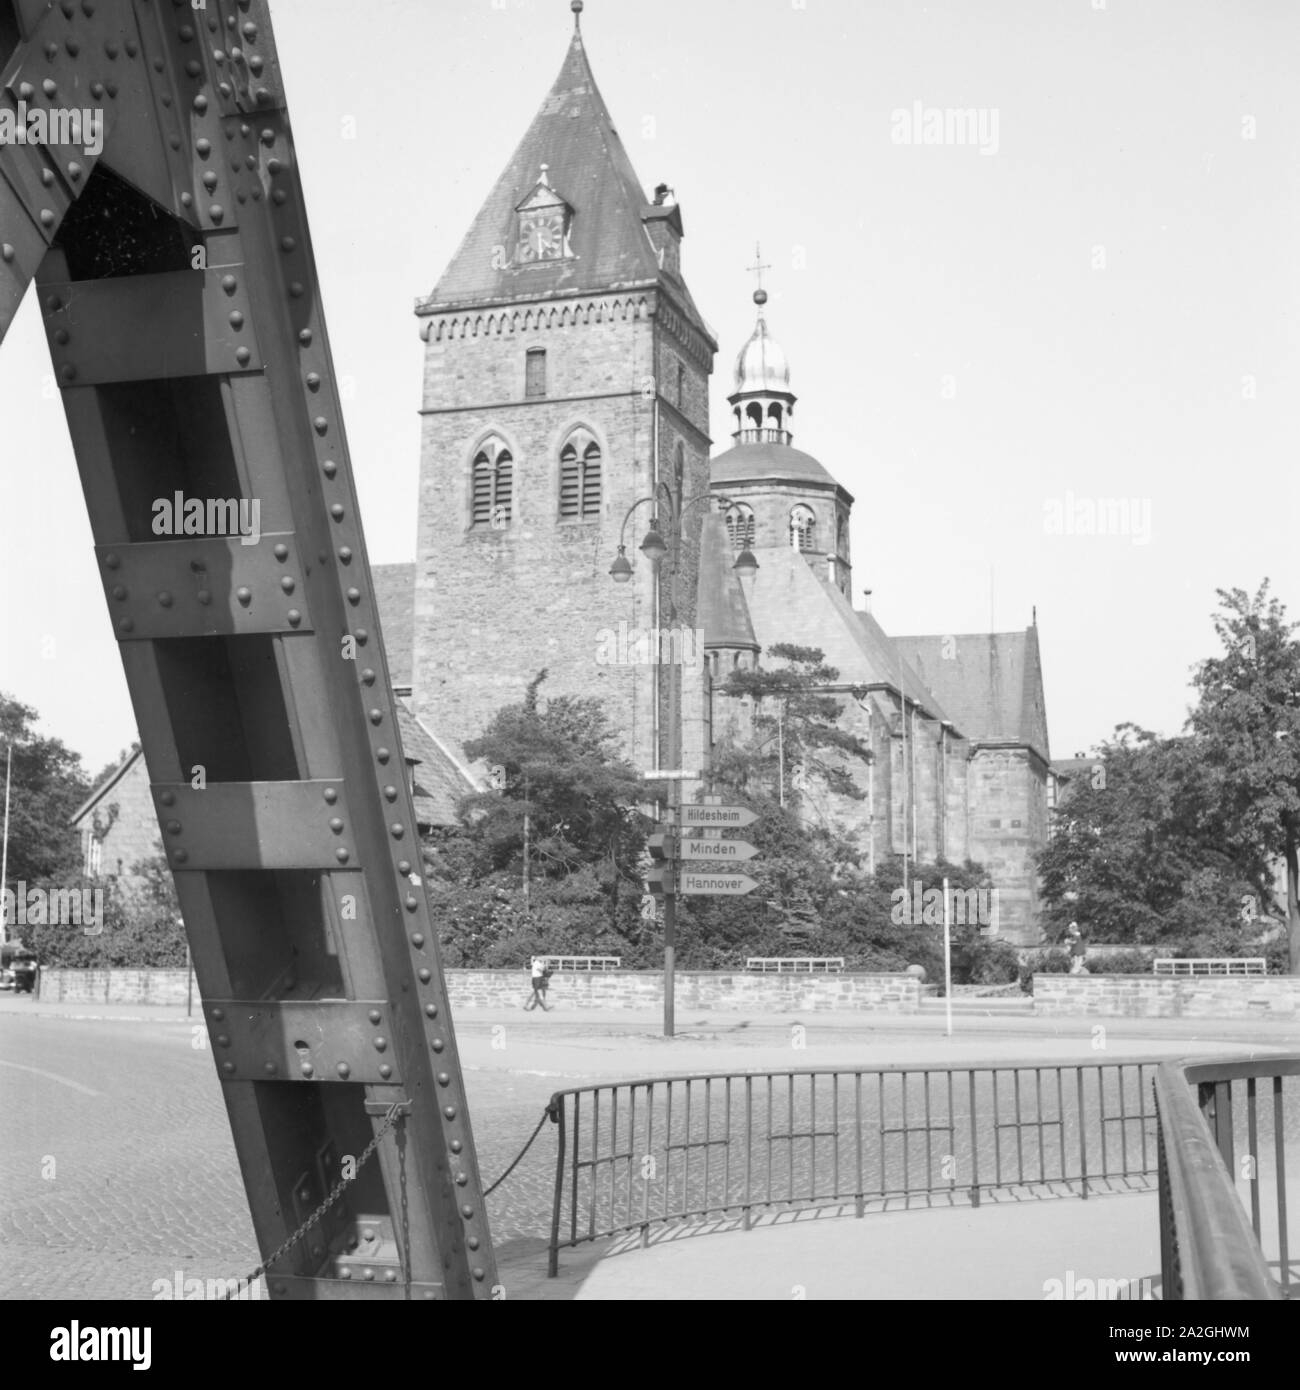 Das Münster San Bonifazius in Hameln an der Weser, Deutschland 1930er Jahre. San Bonifazius minster presso la città di Hameln sul fiume Weser, Germania 1930s. Foto Stock